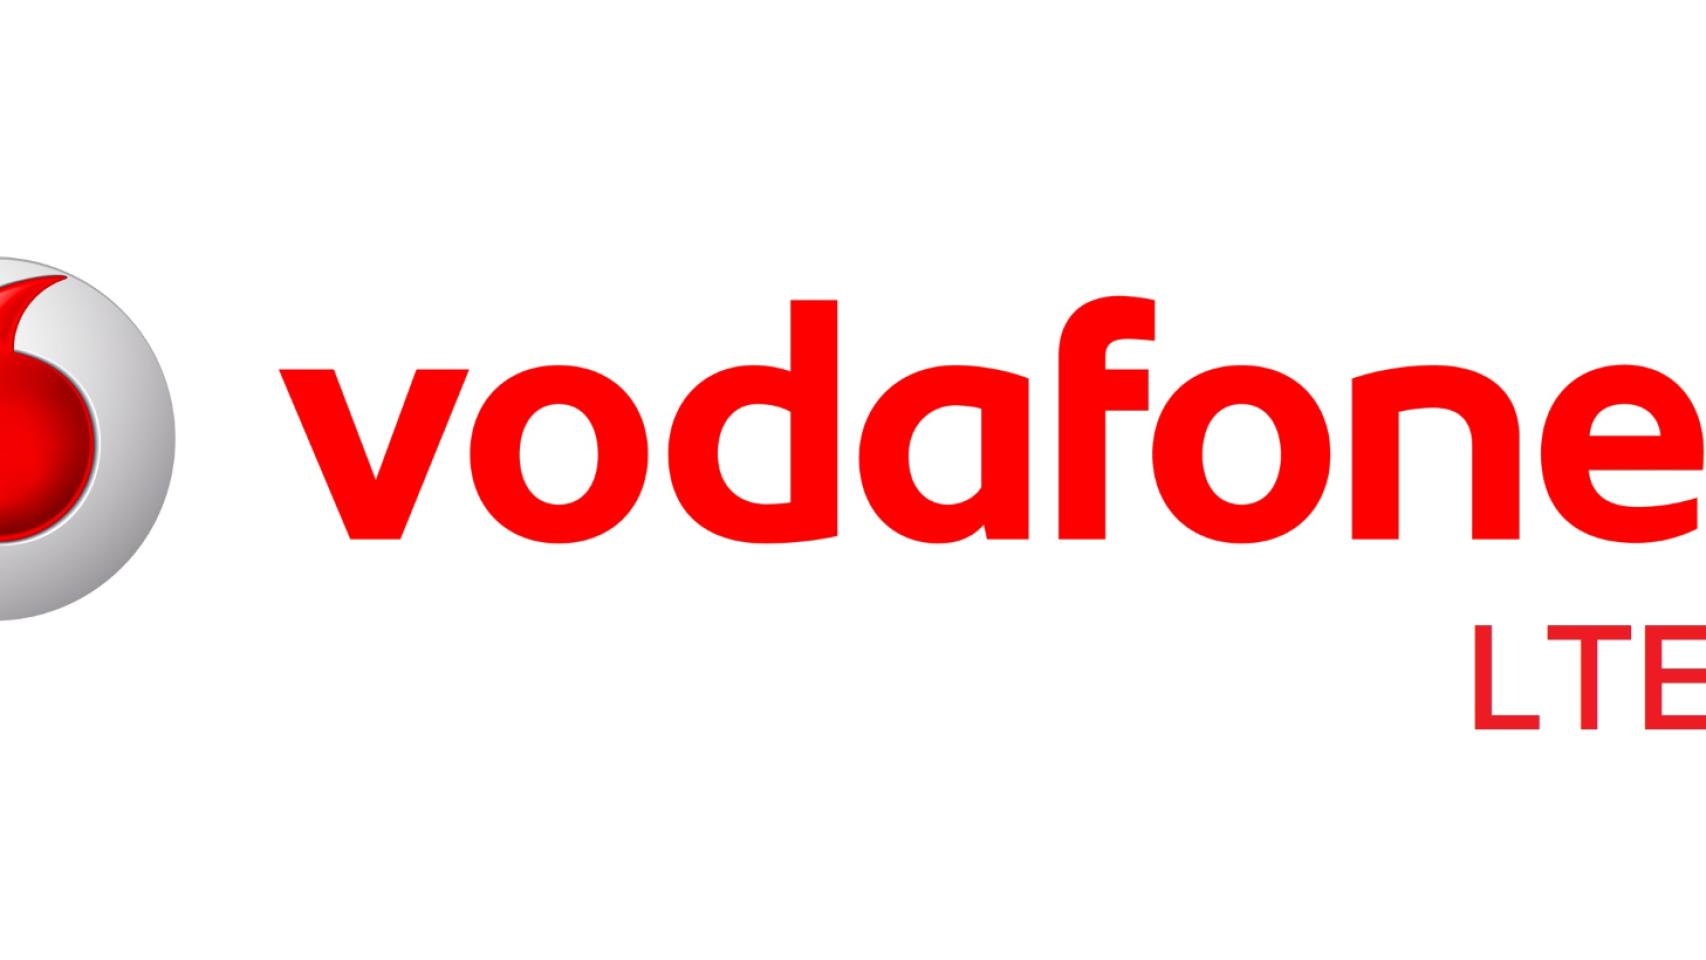 Vodafone ofrecerá conexiones móviles LTE-A de hasta 300 Mbps en octubre